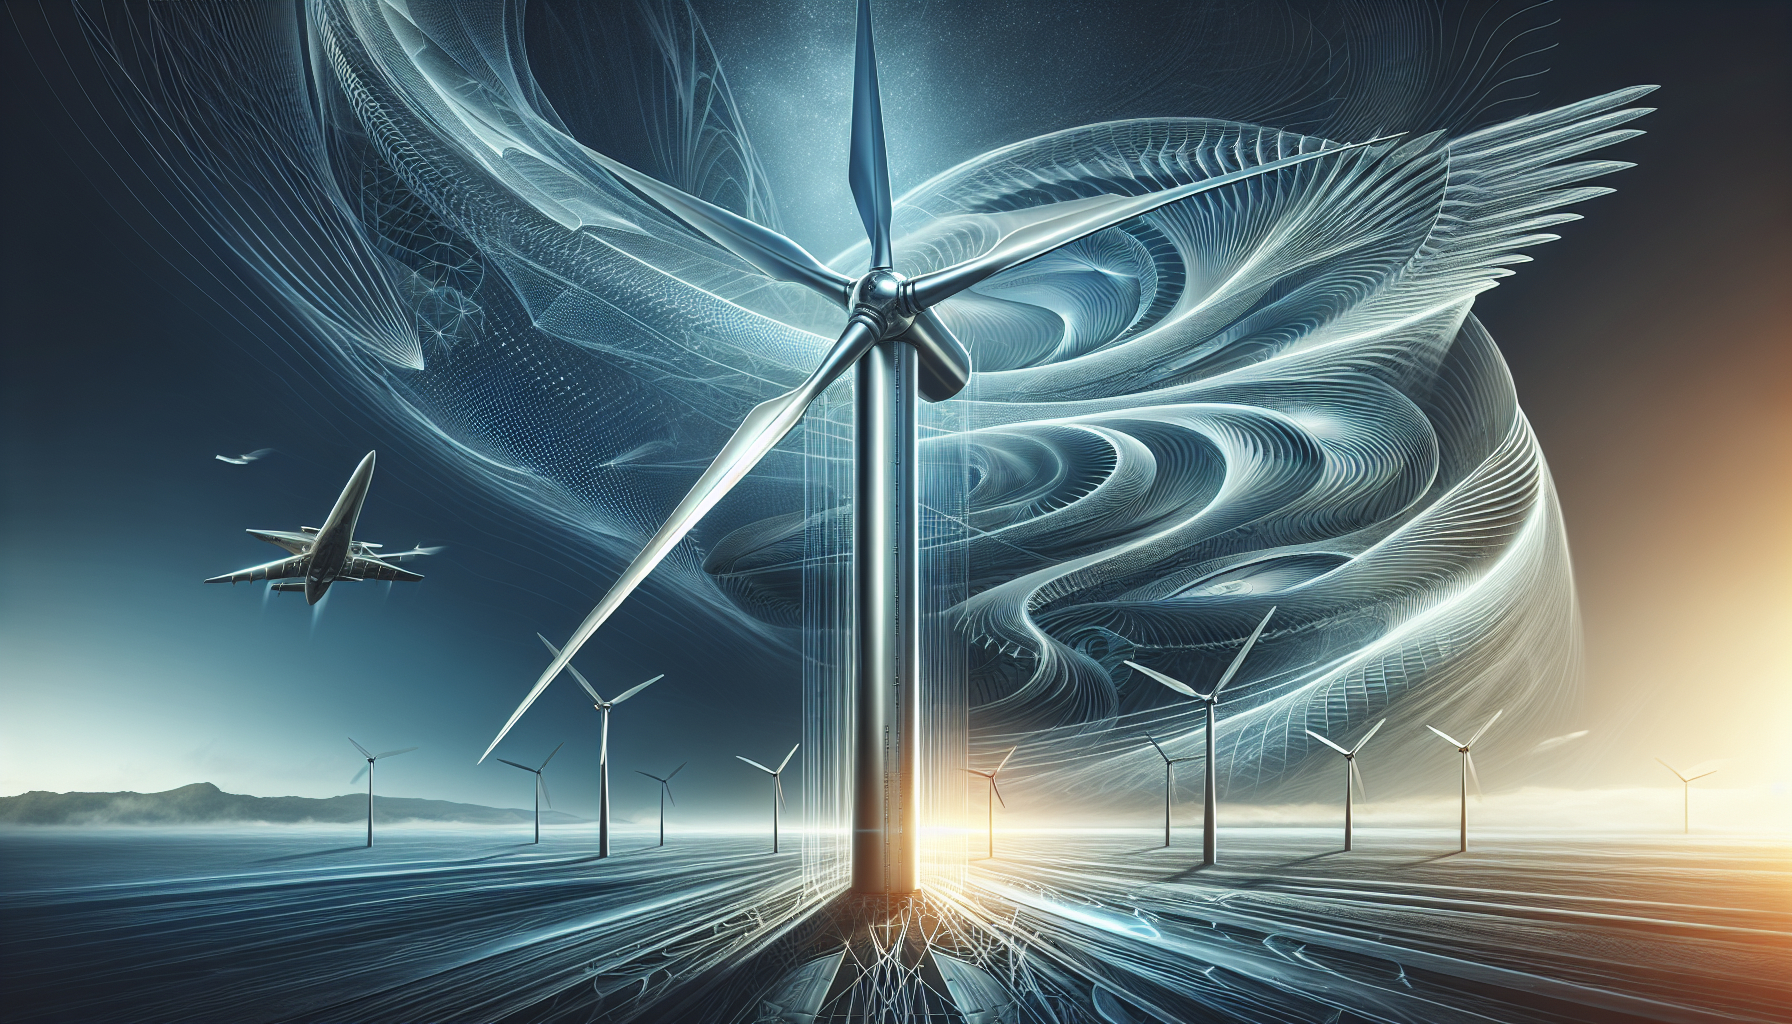 Enhanced wind turbine aerodynamics